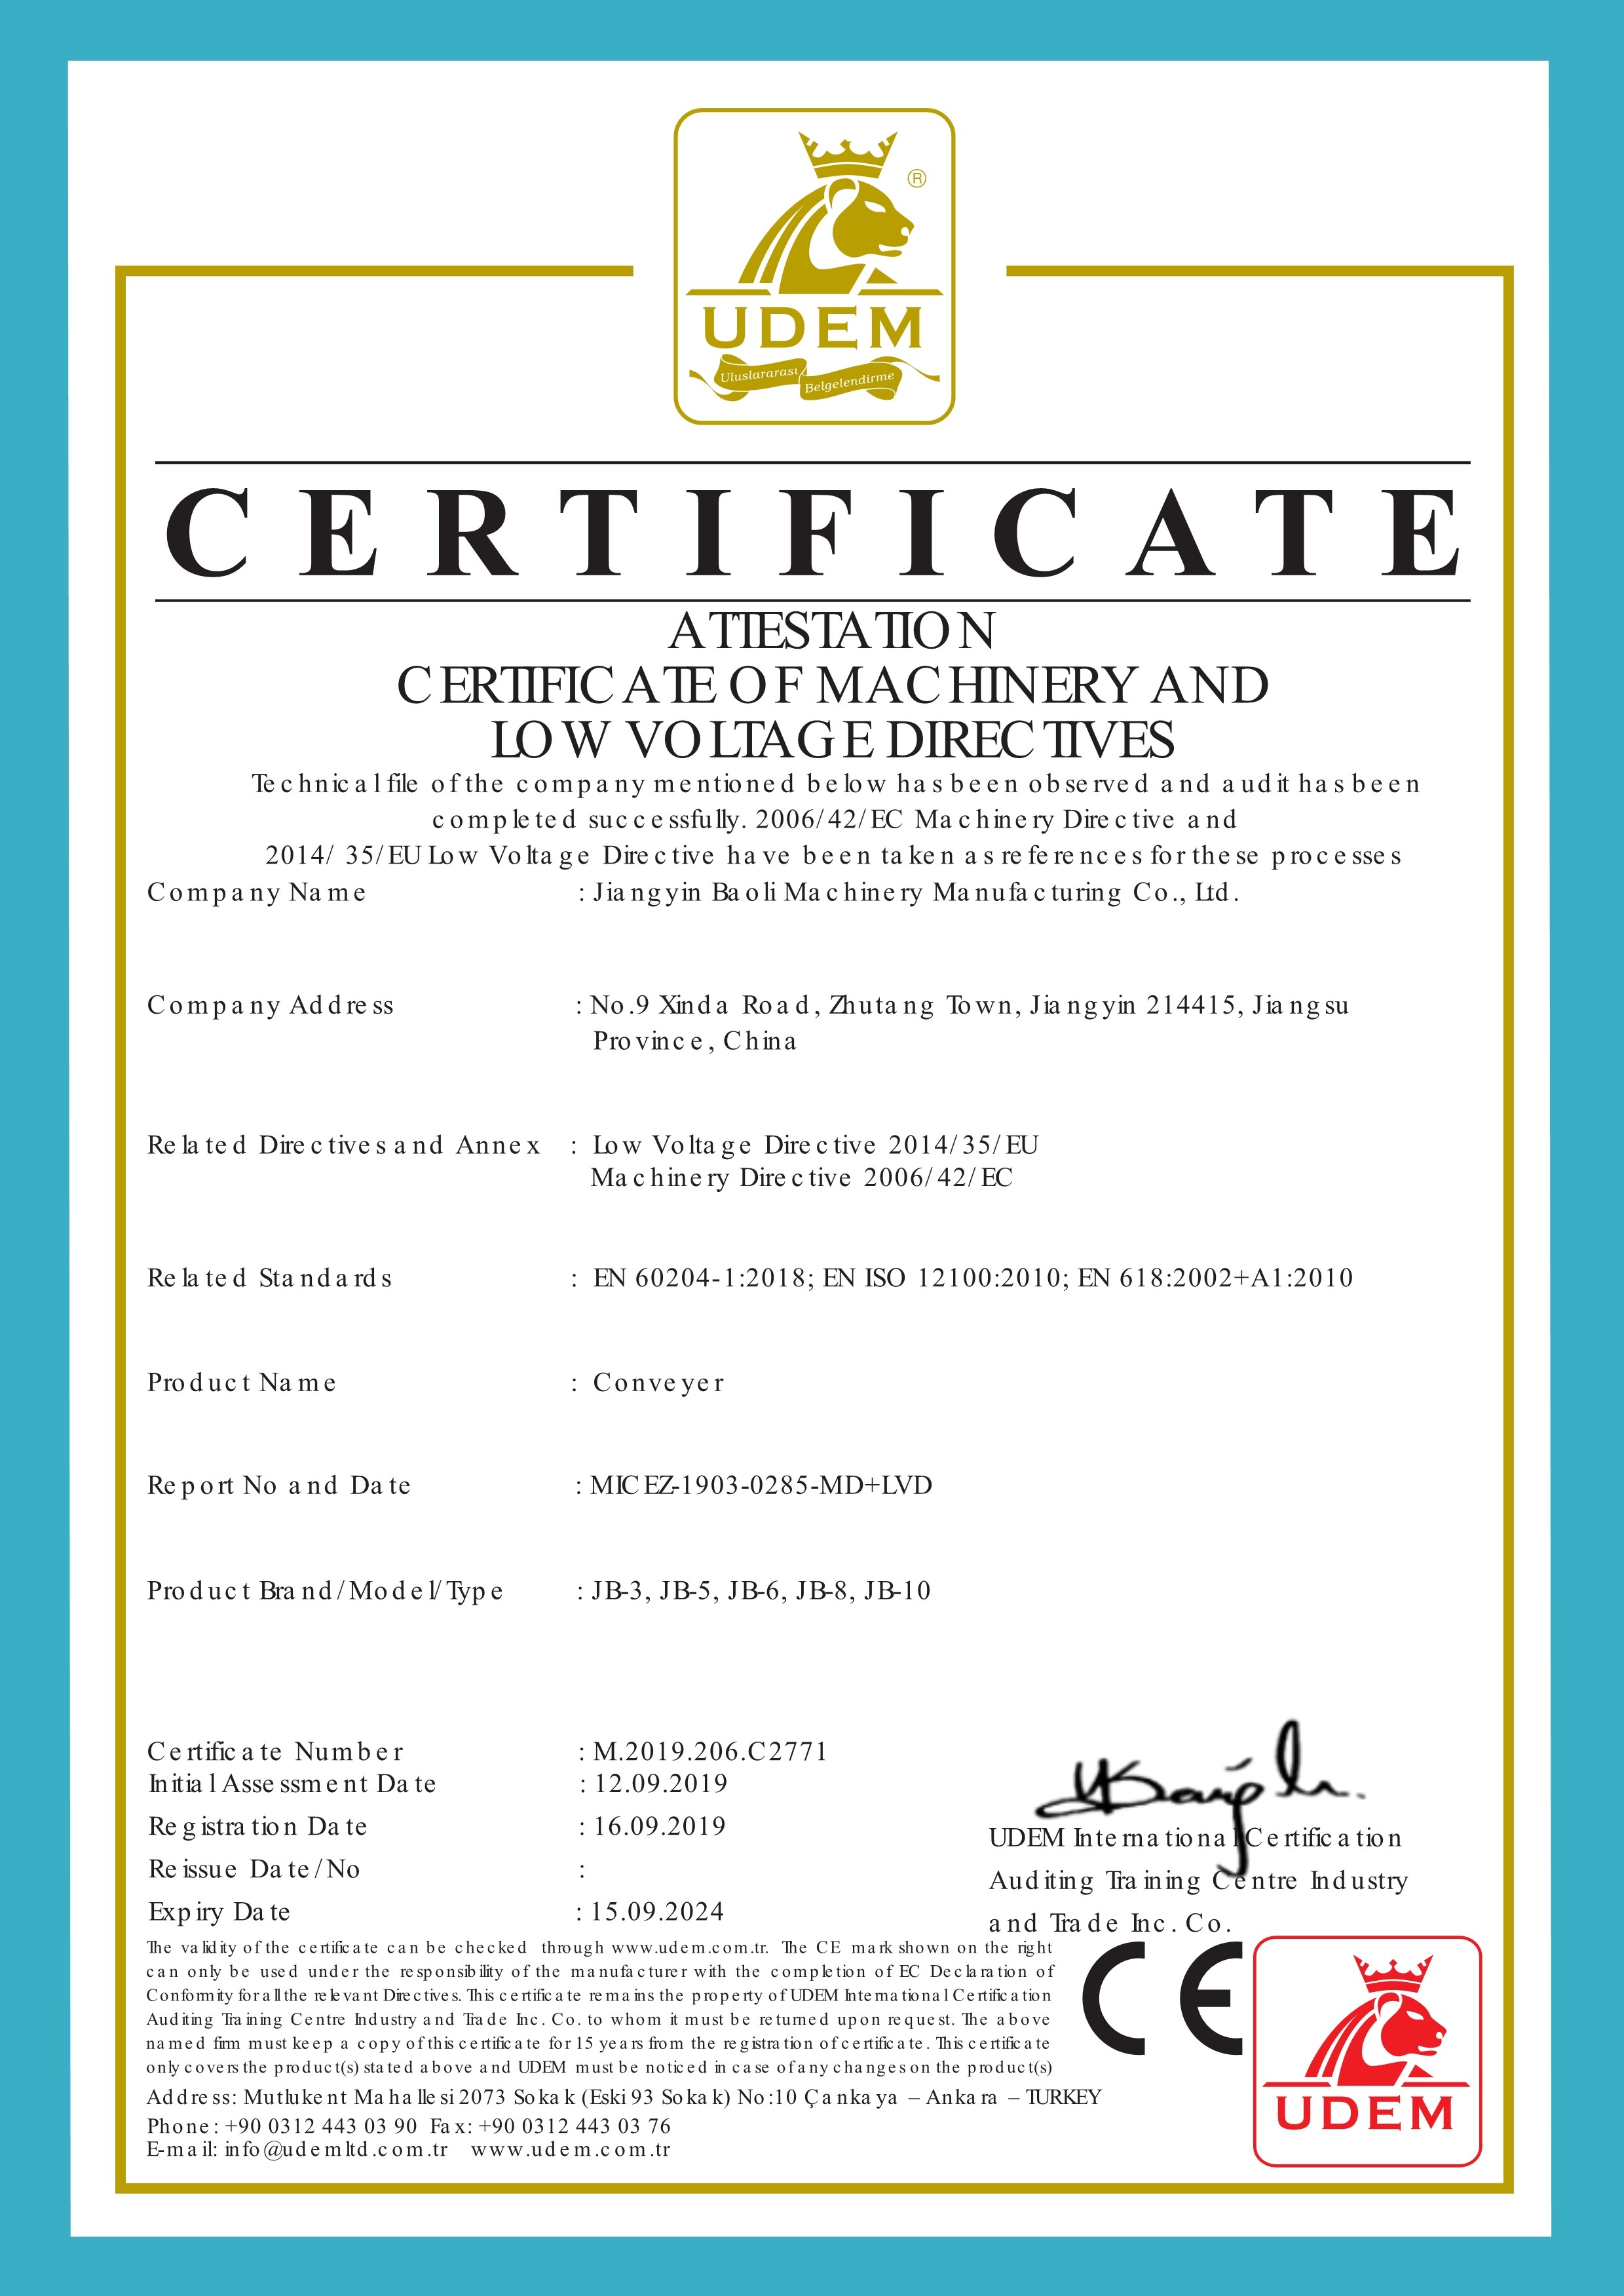 Porcellana Jiangyin Baoli Machinery Manufacturing Co., Ltd. Certificazioni